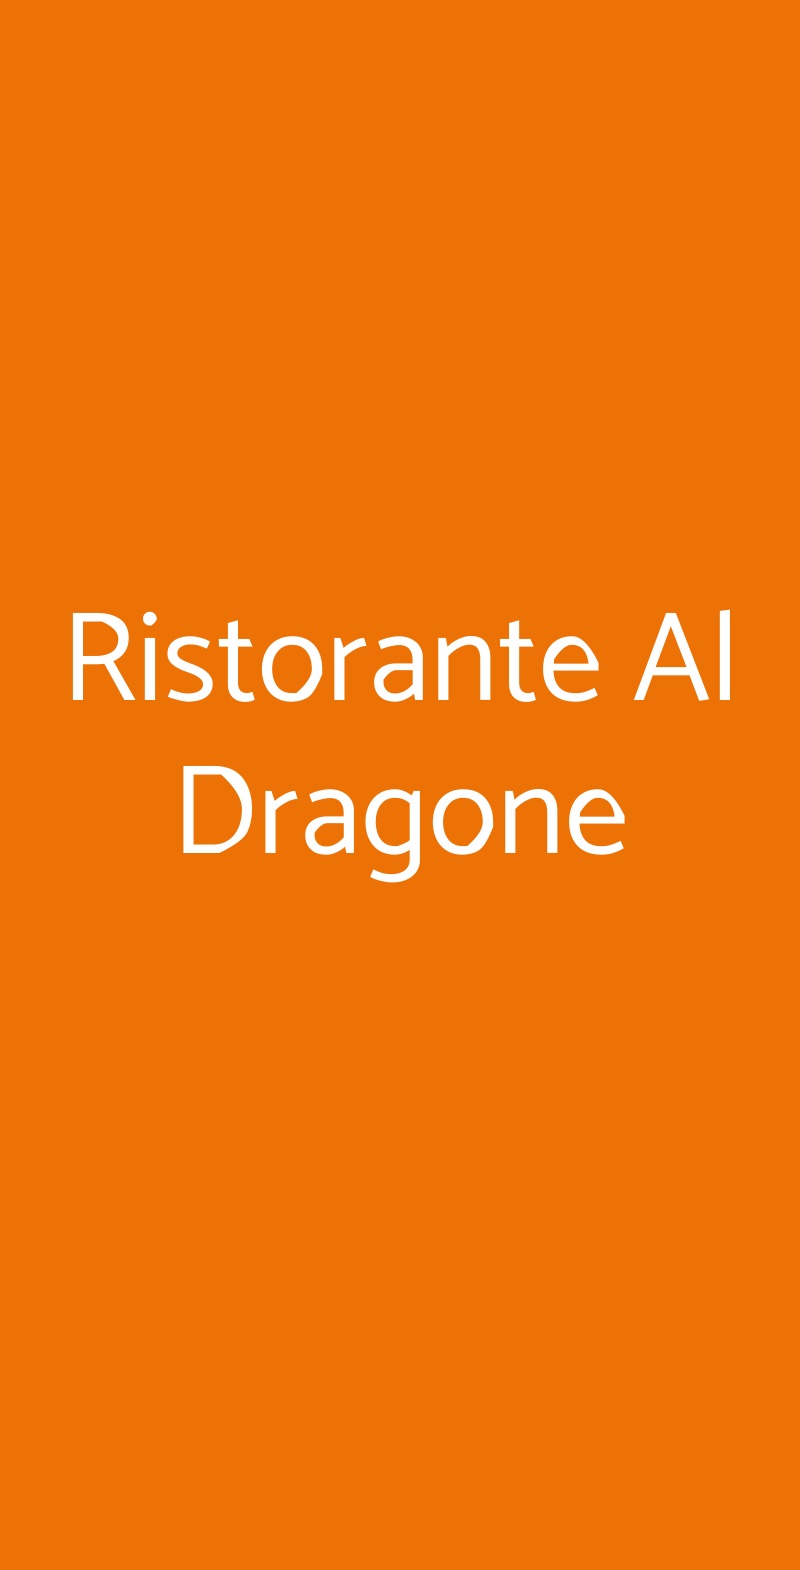 Ristorante Al Dragone Milano menù 1 pagina